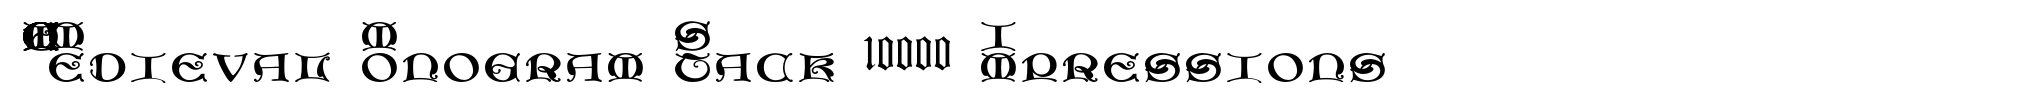 MFC Medieval Monogram Stack 10000 Impressions image